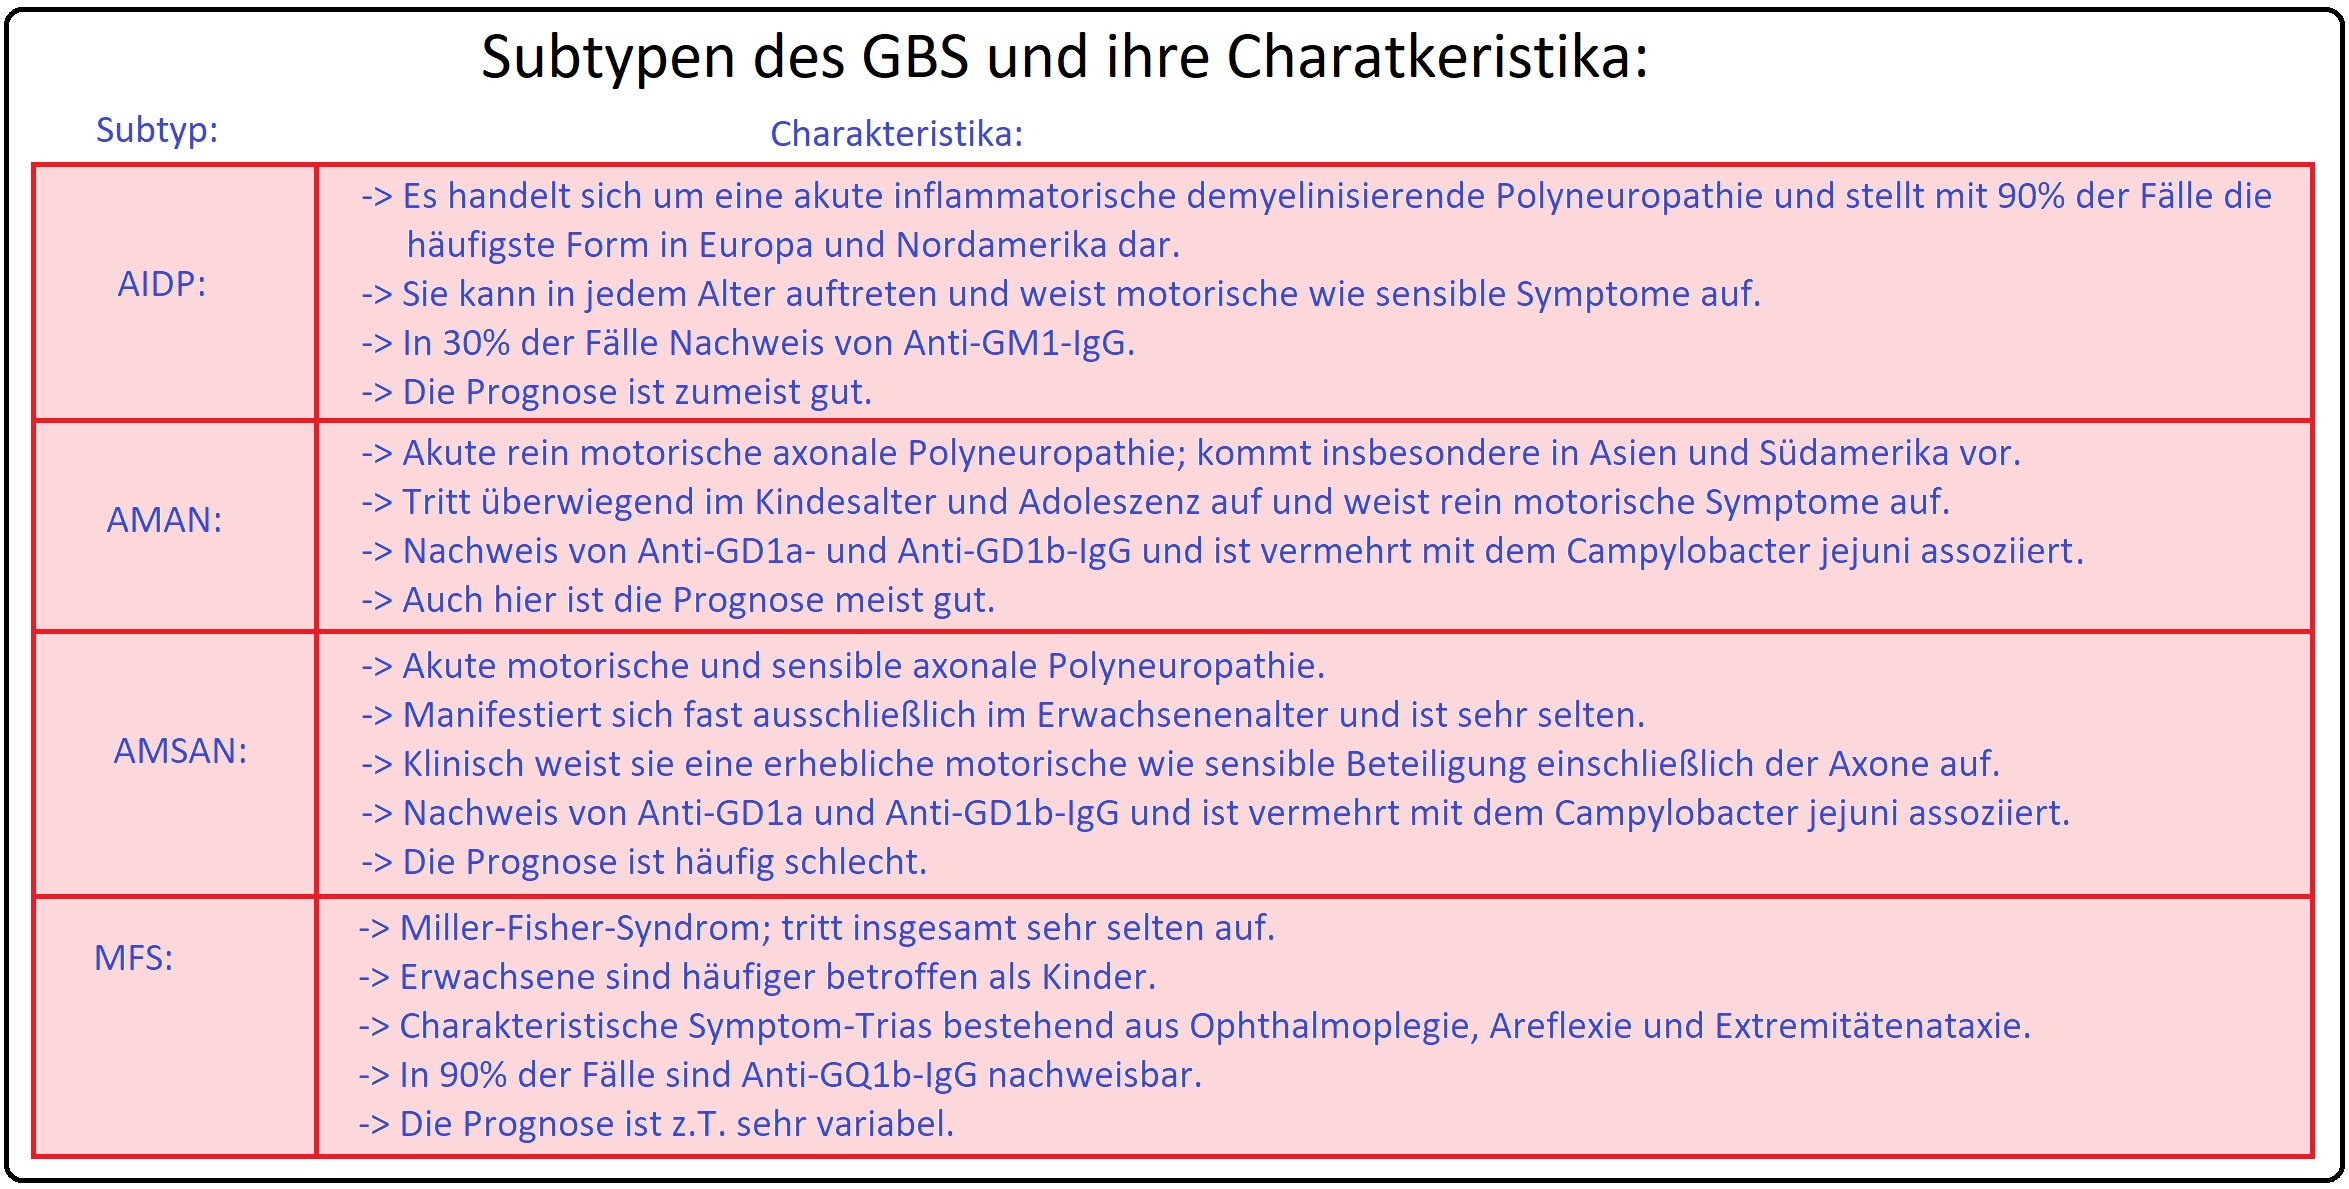 036 Subtypen des GBS und ihre Charakteristika